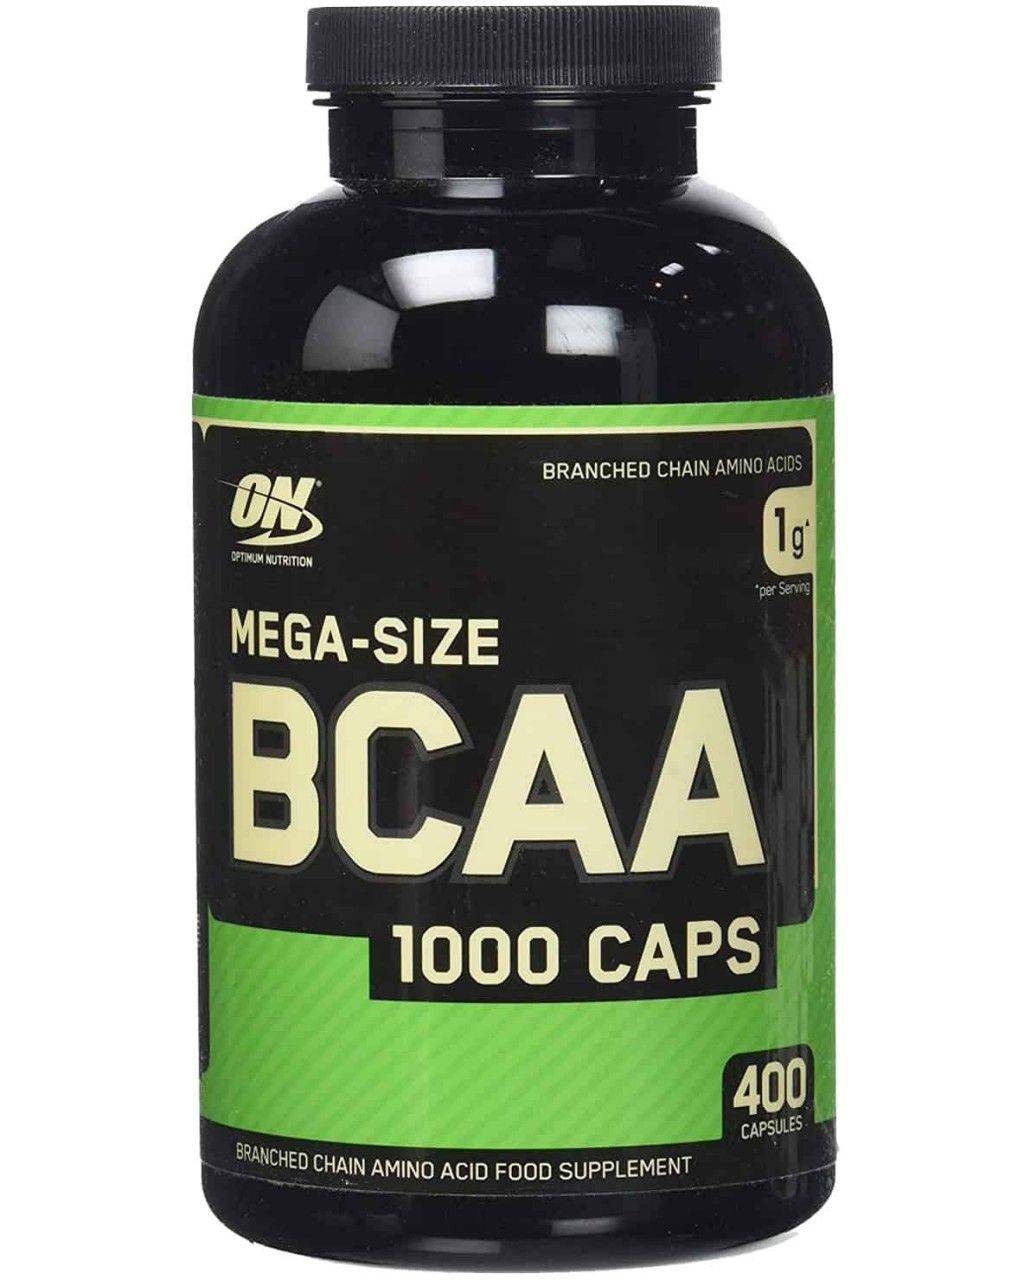 Bcaa mega size 1000 caps: как принимать, противопоказания, отзывы